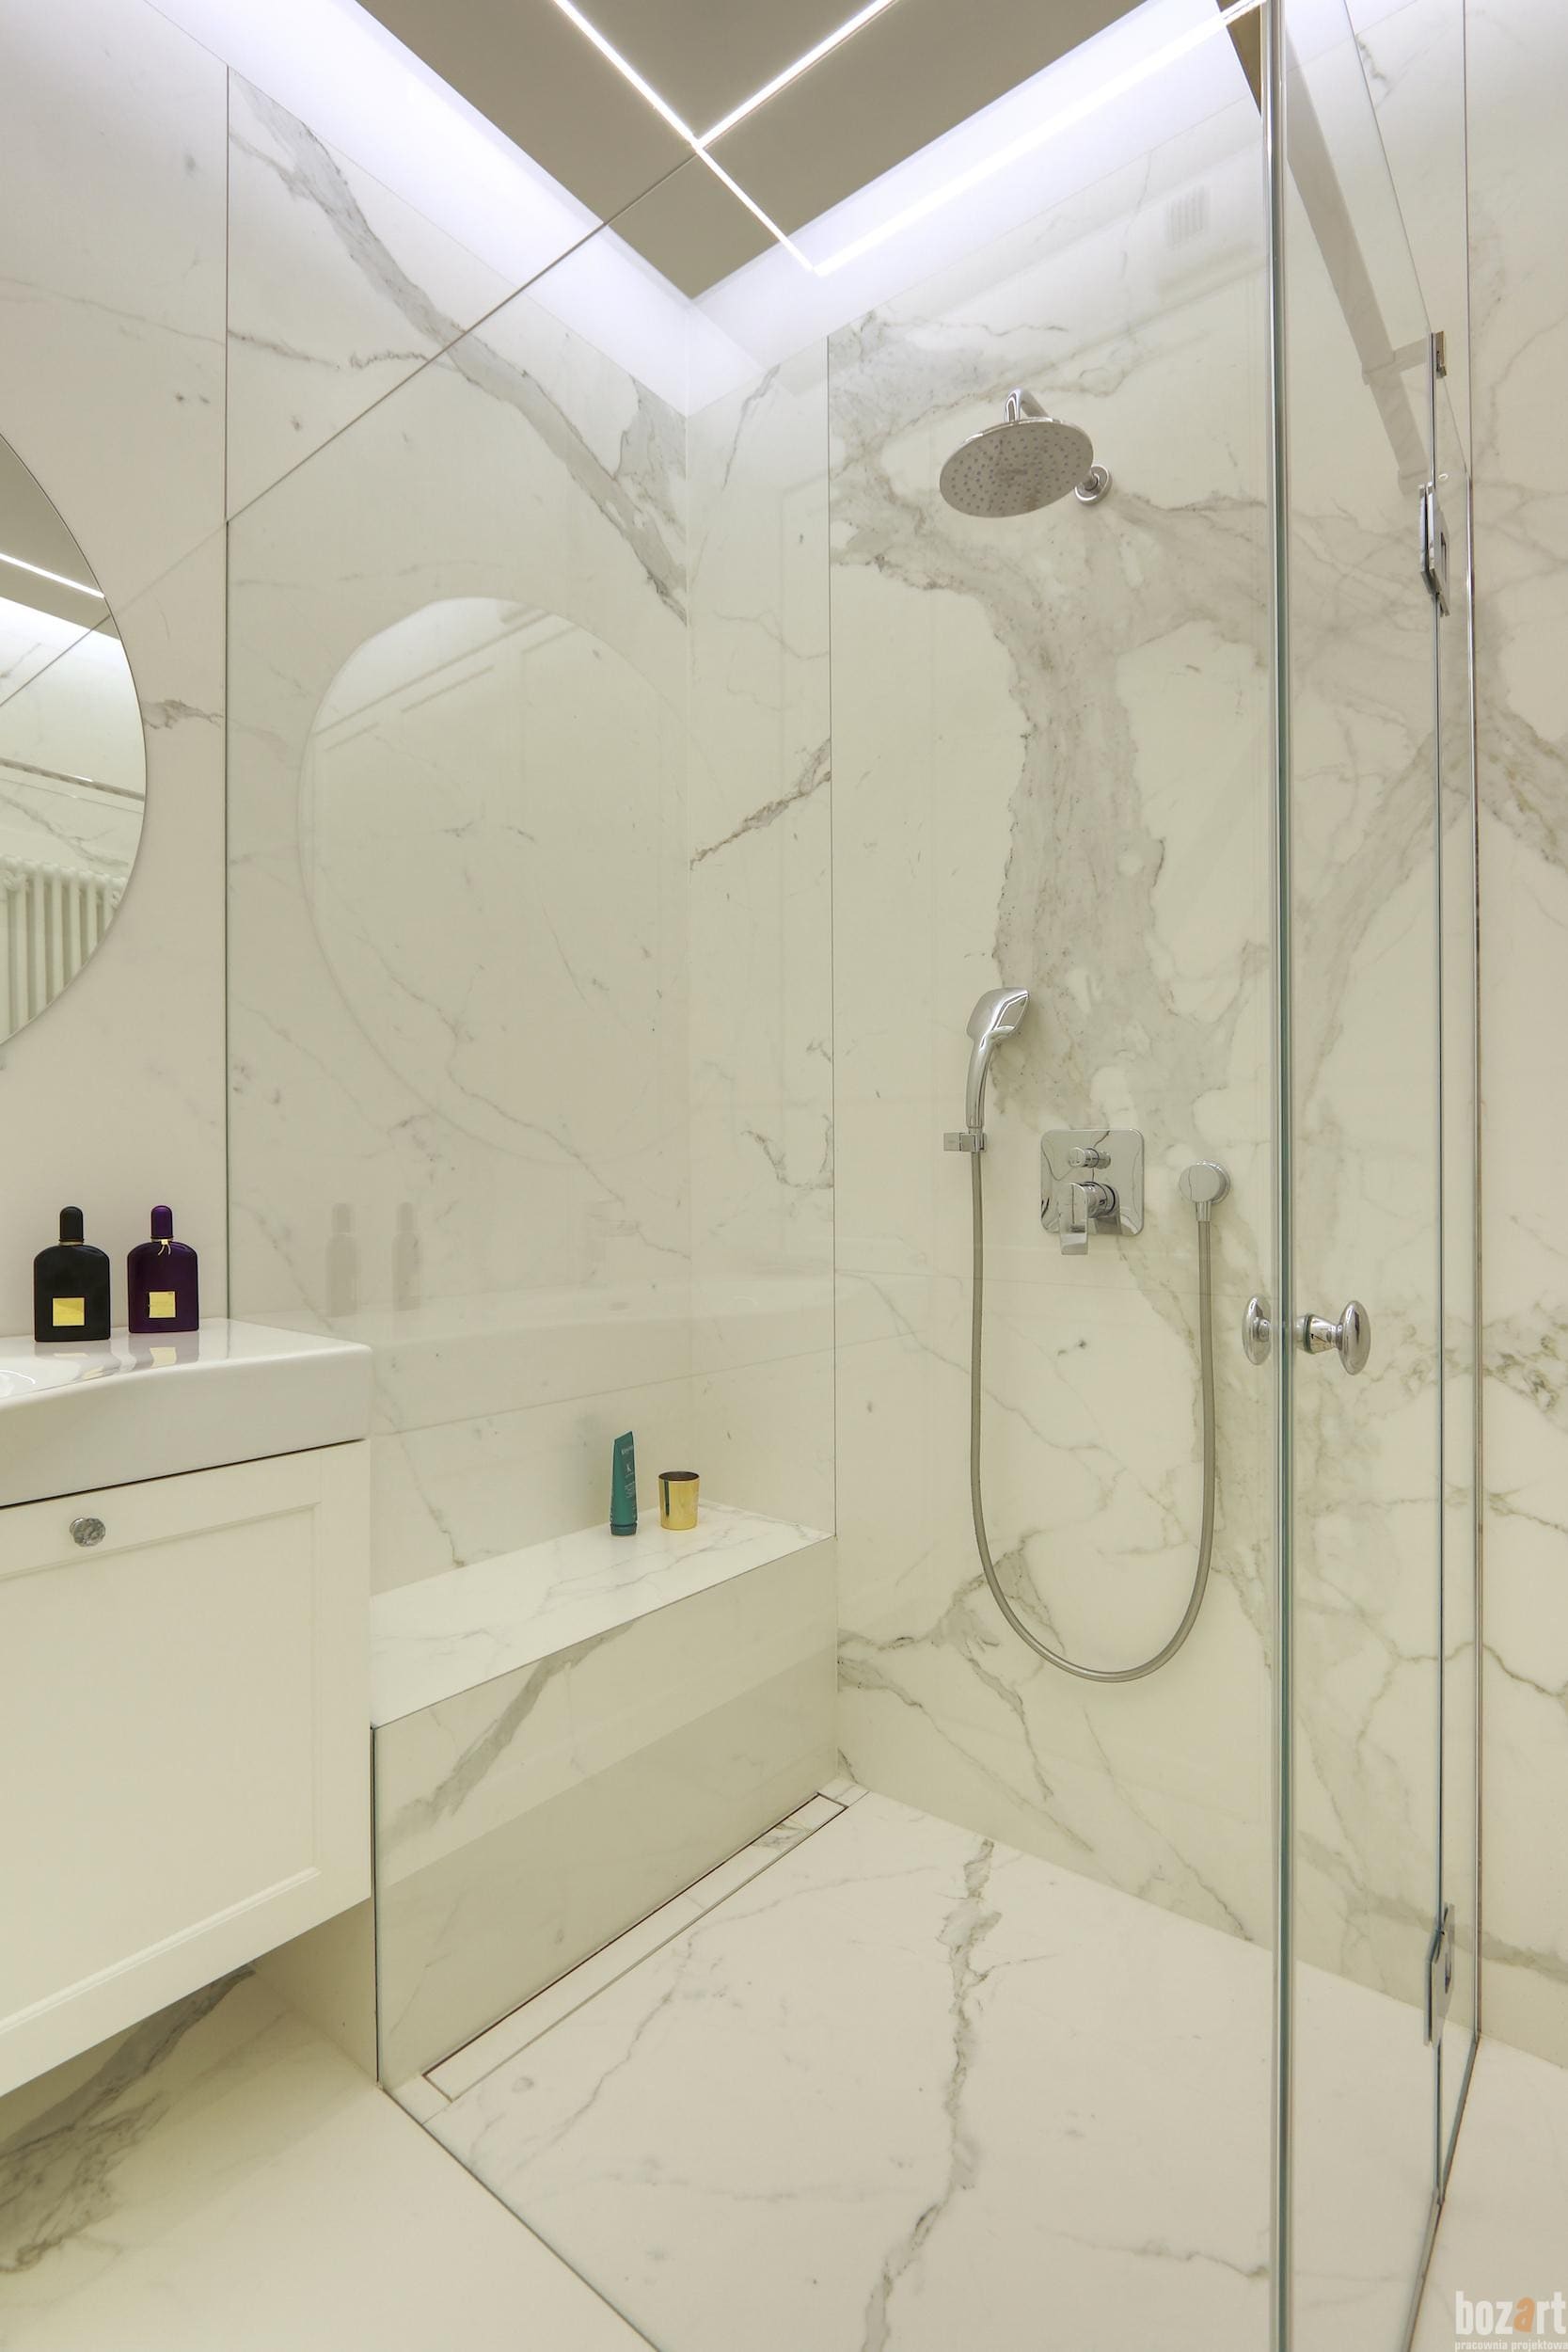 pracownia architektoniczna warszawasiedzisko w prysznicu